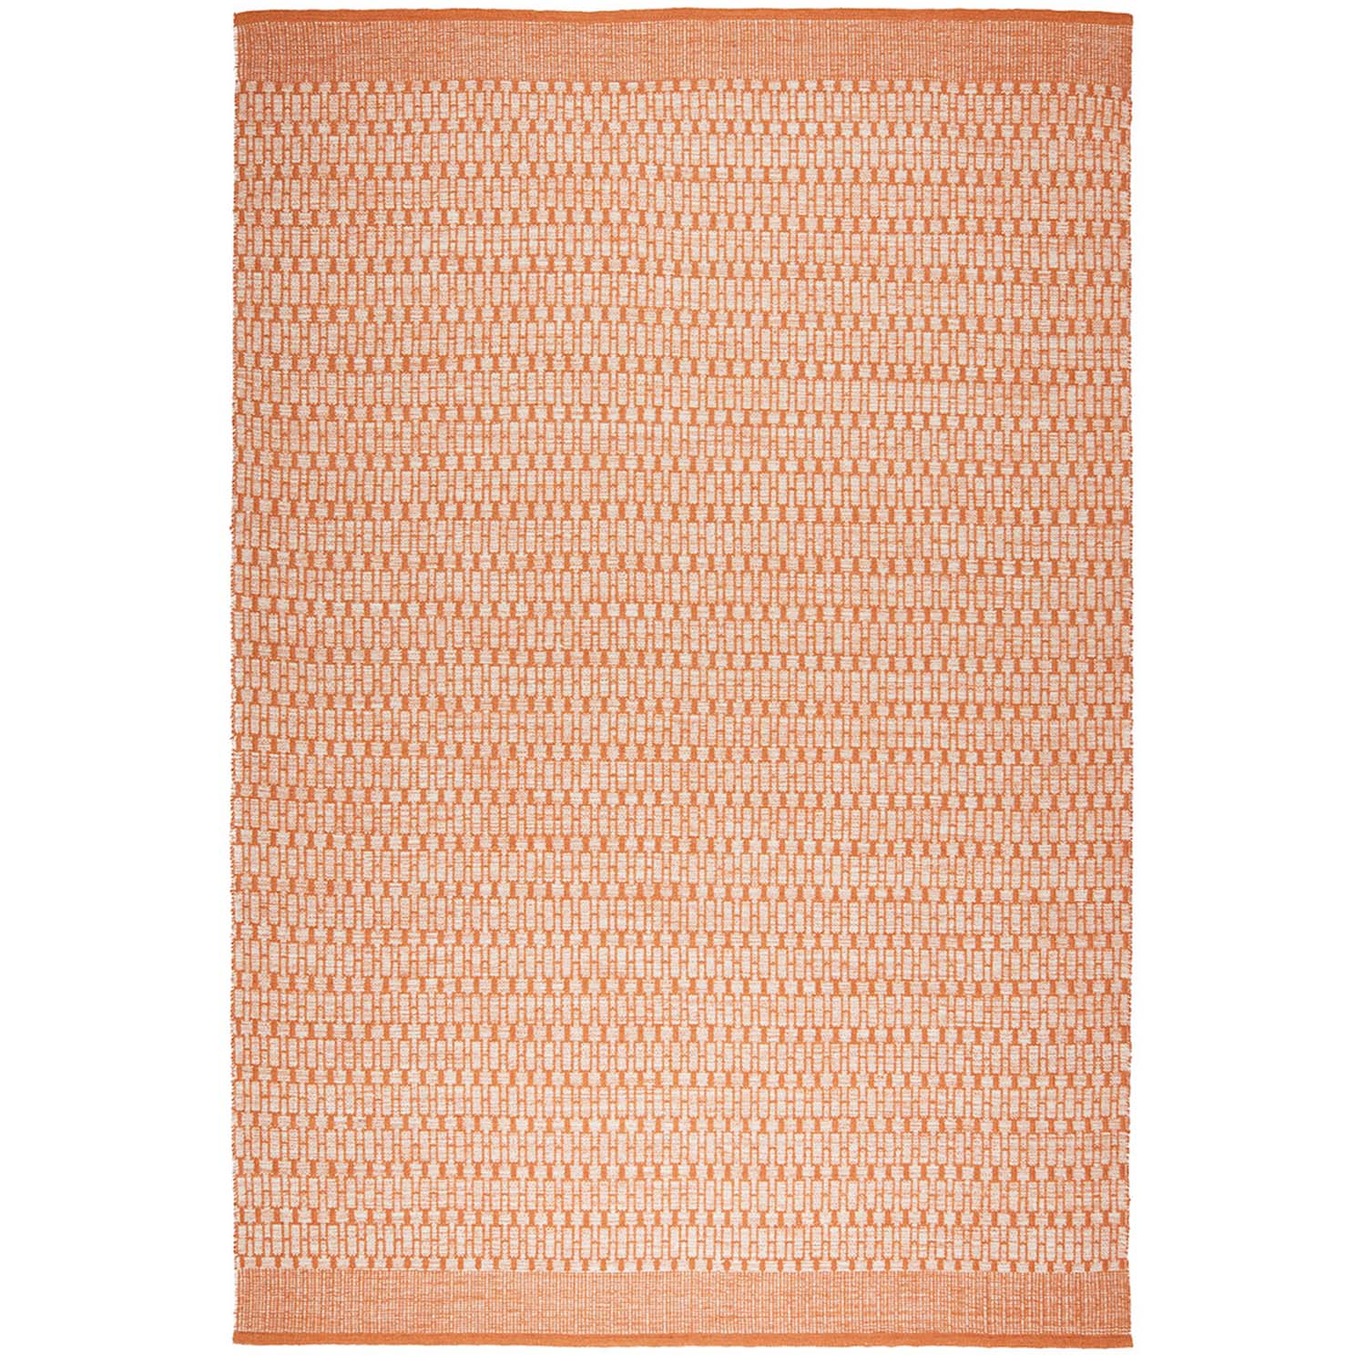 Mahi Ullmatta Off-white / Orange, 170x240 cm